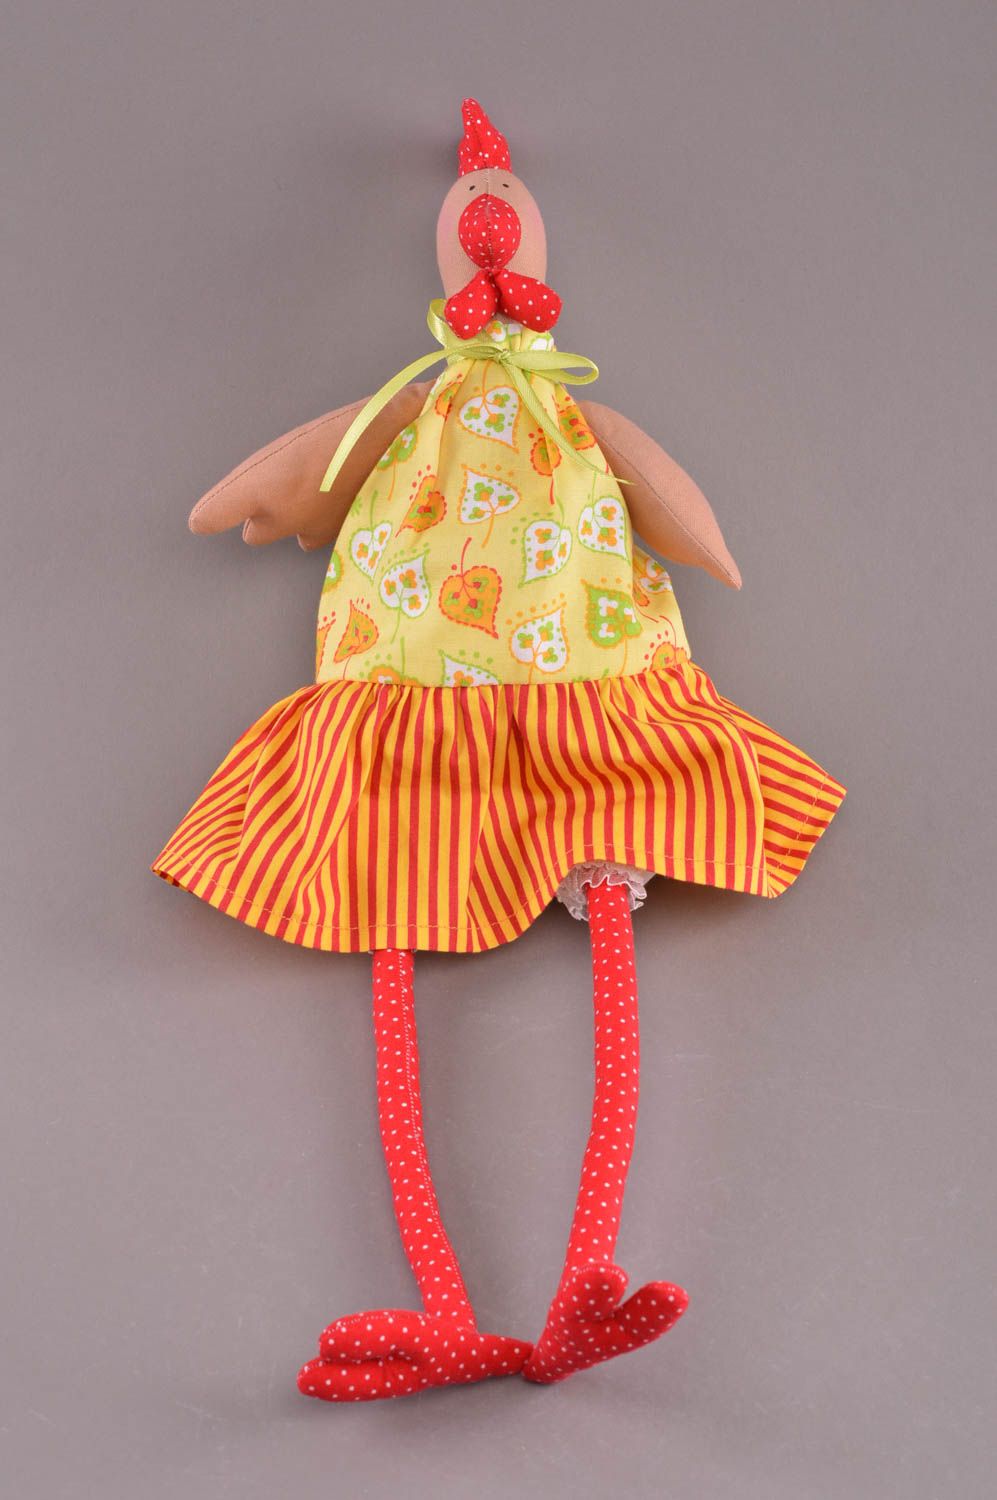 Textil Kuscheltier Huhn im gelben Kleid weich bunt handmade Spielzeug für Kinder foto 3